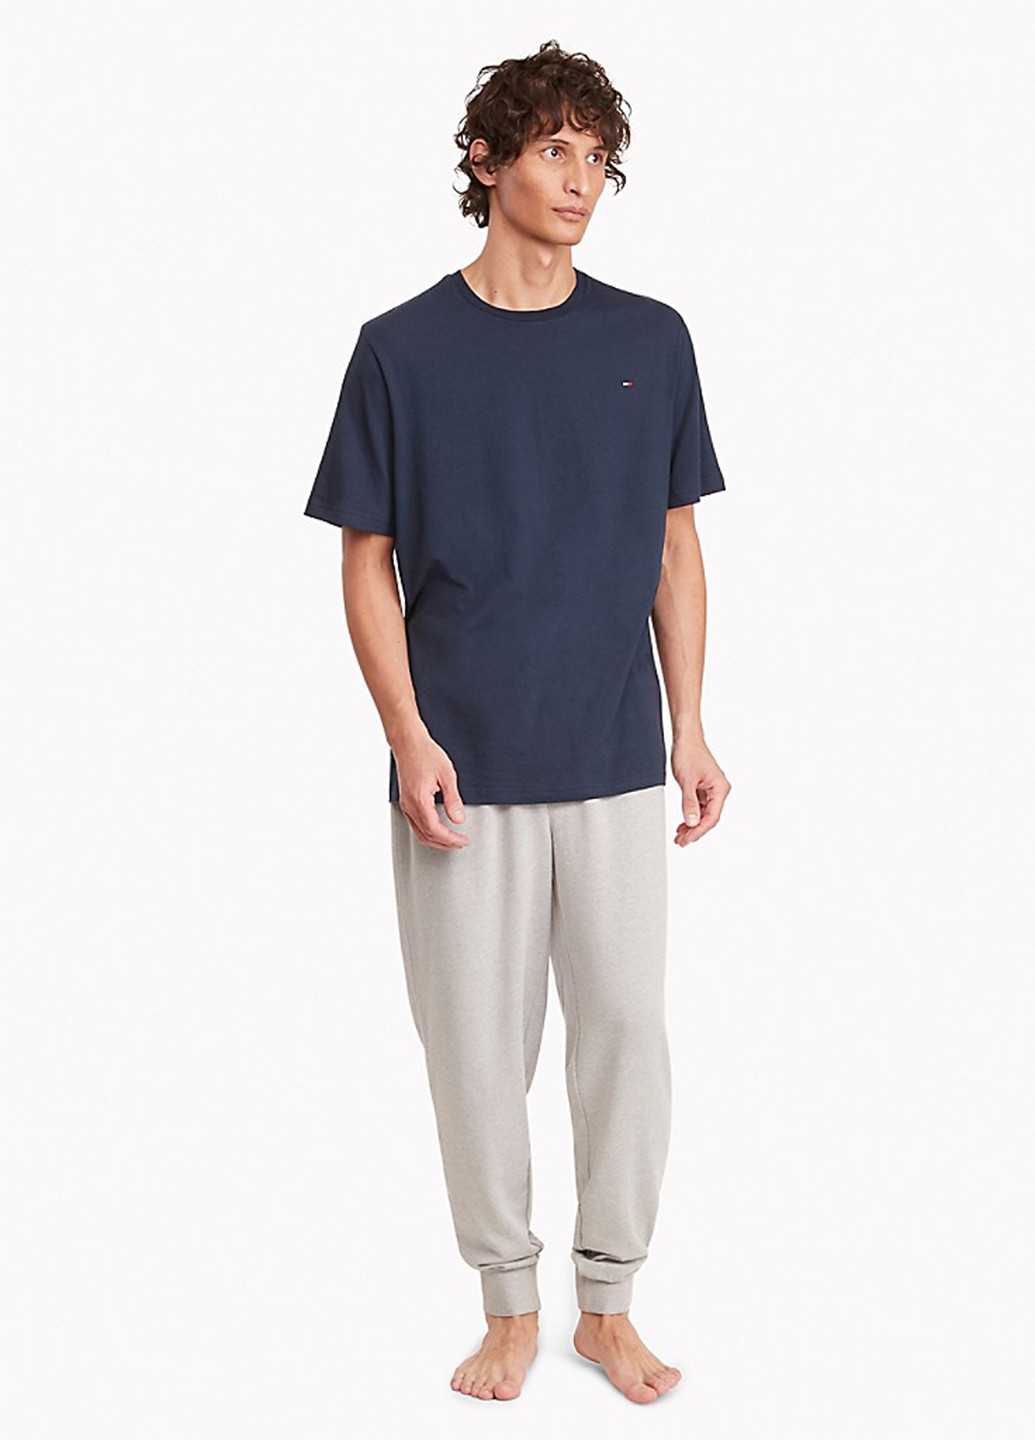 Піжама (футболка, штани) Tommy Hilfiger футболка + штани меланж сіро-синя домашня трикотаж, бавовна